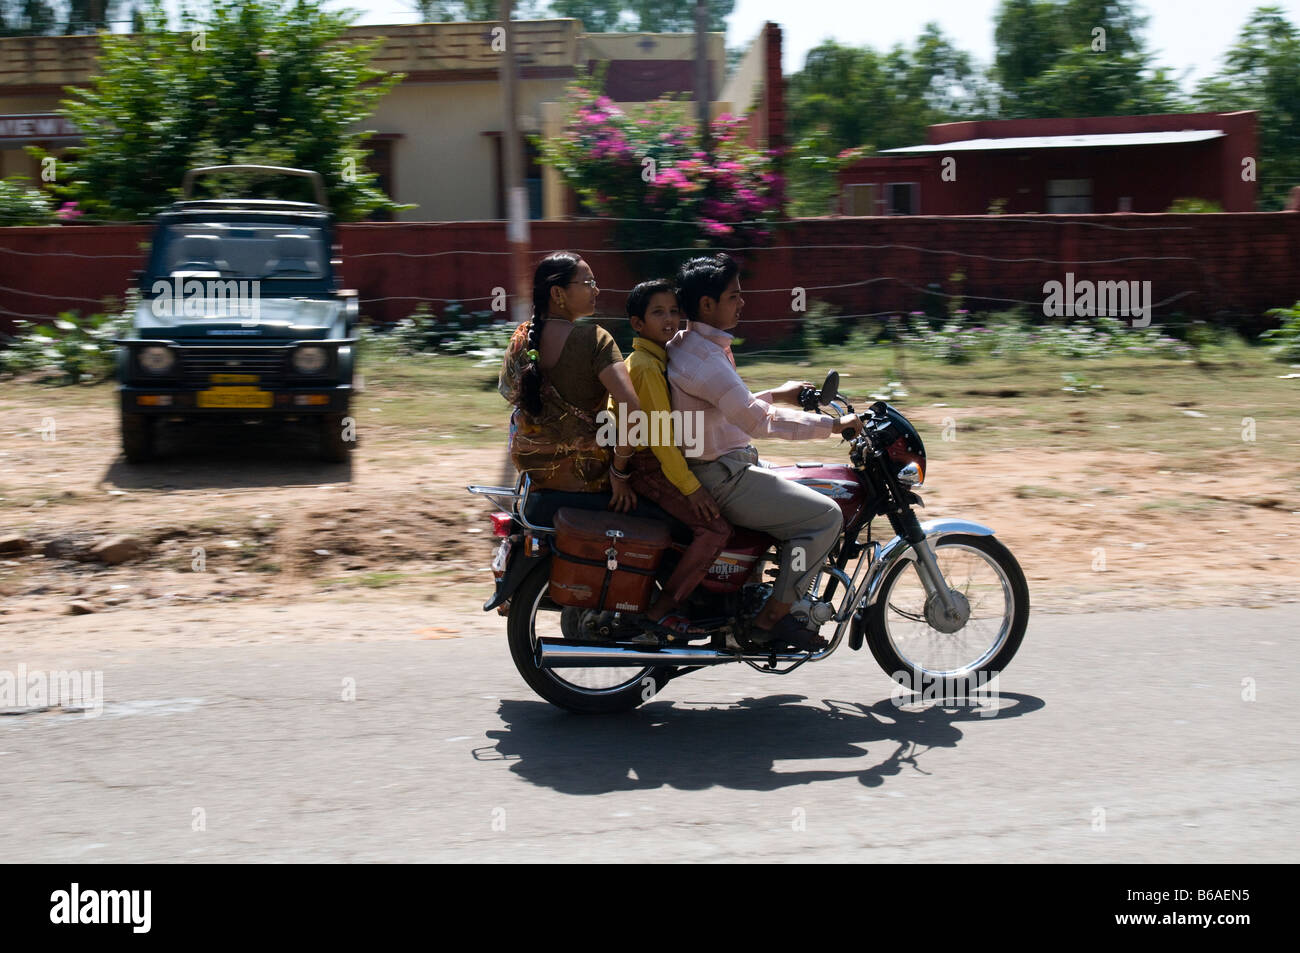 Il trasporto. Sawai Madhopur. Il Rajasthan. India Foto Stock